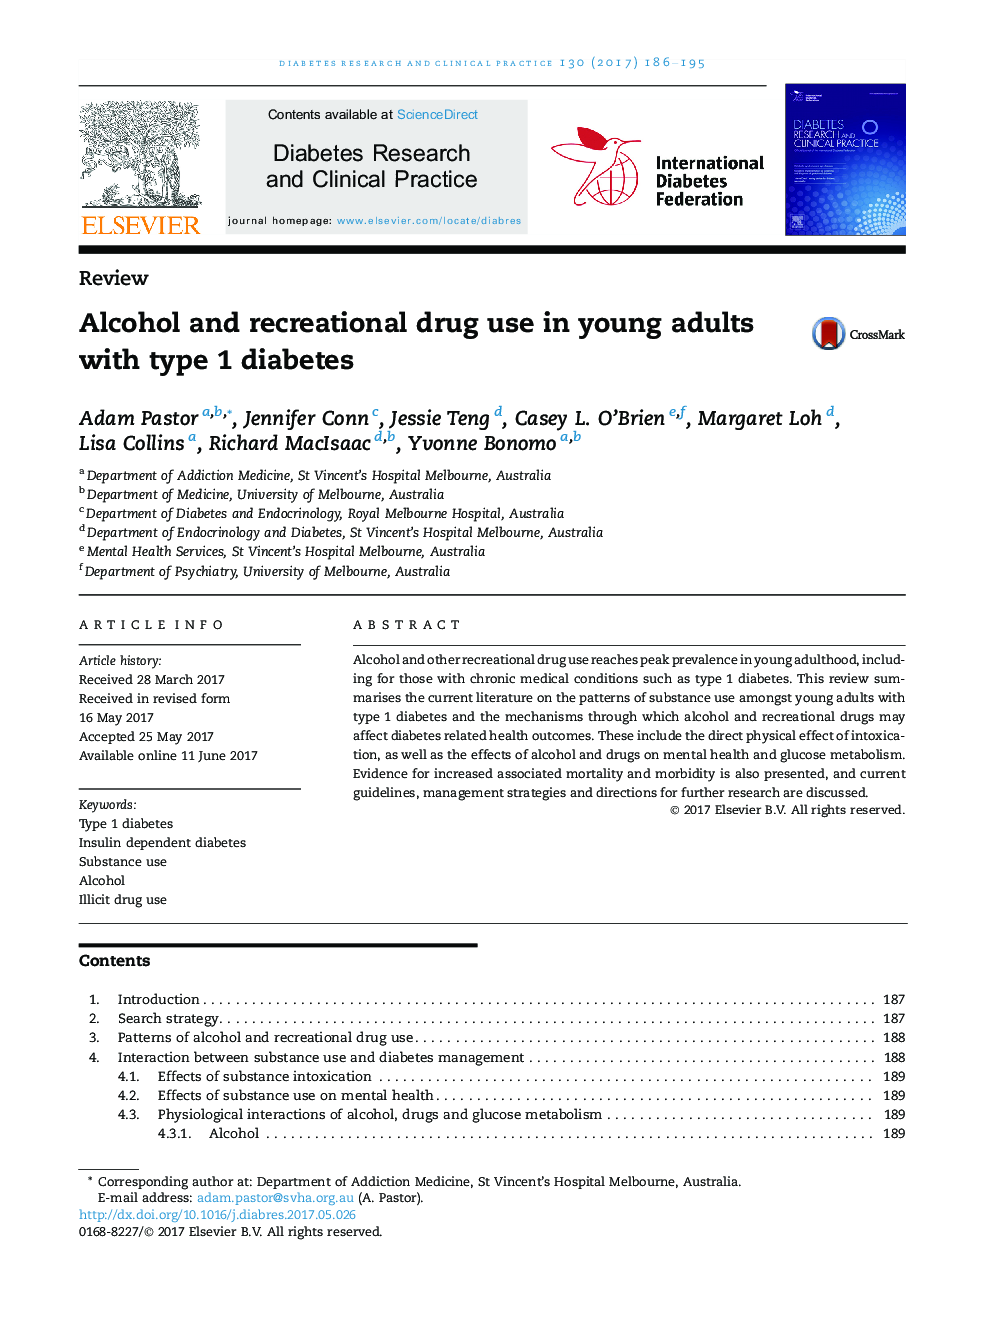 مصرف الکل و تجارتی در بزرگسالان جوان مبتلا به دیابت نوع 1 